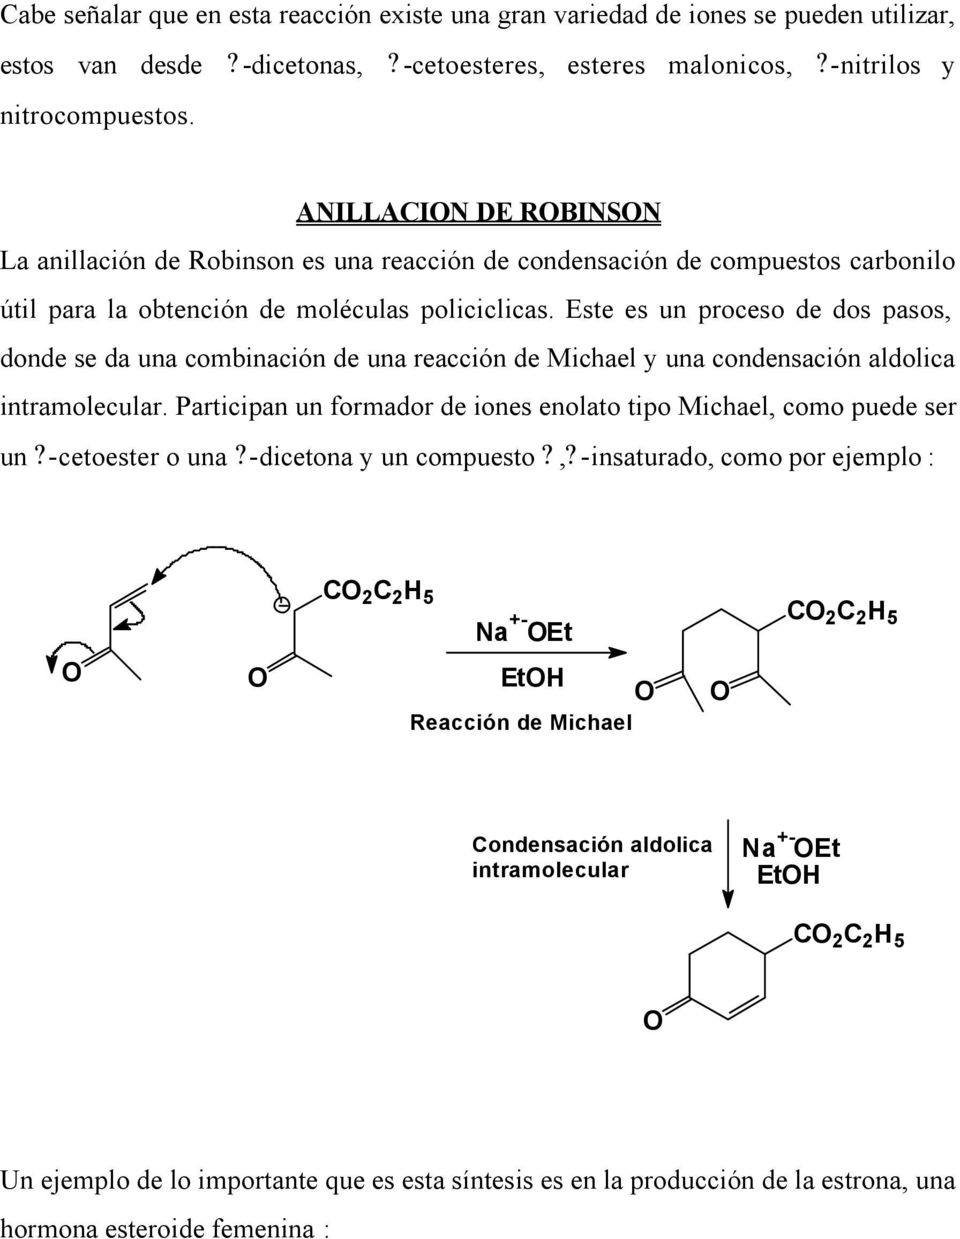 Este es un proceso de dos pasos, donde se da una combinación de una reacción de Michael y una condensación aldolica intramolecular.